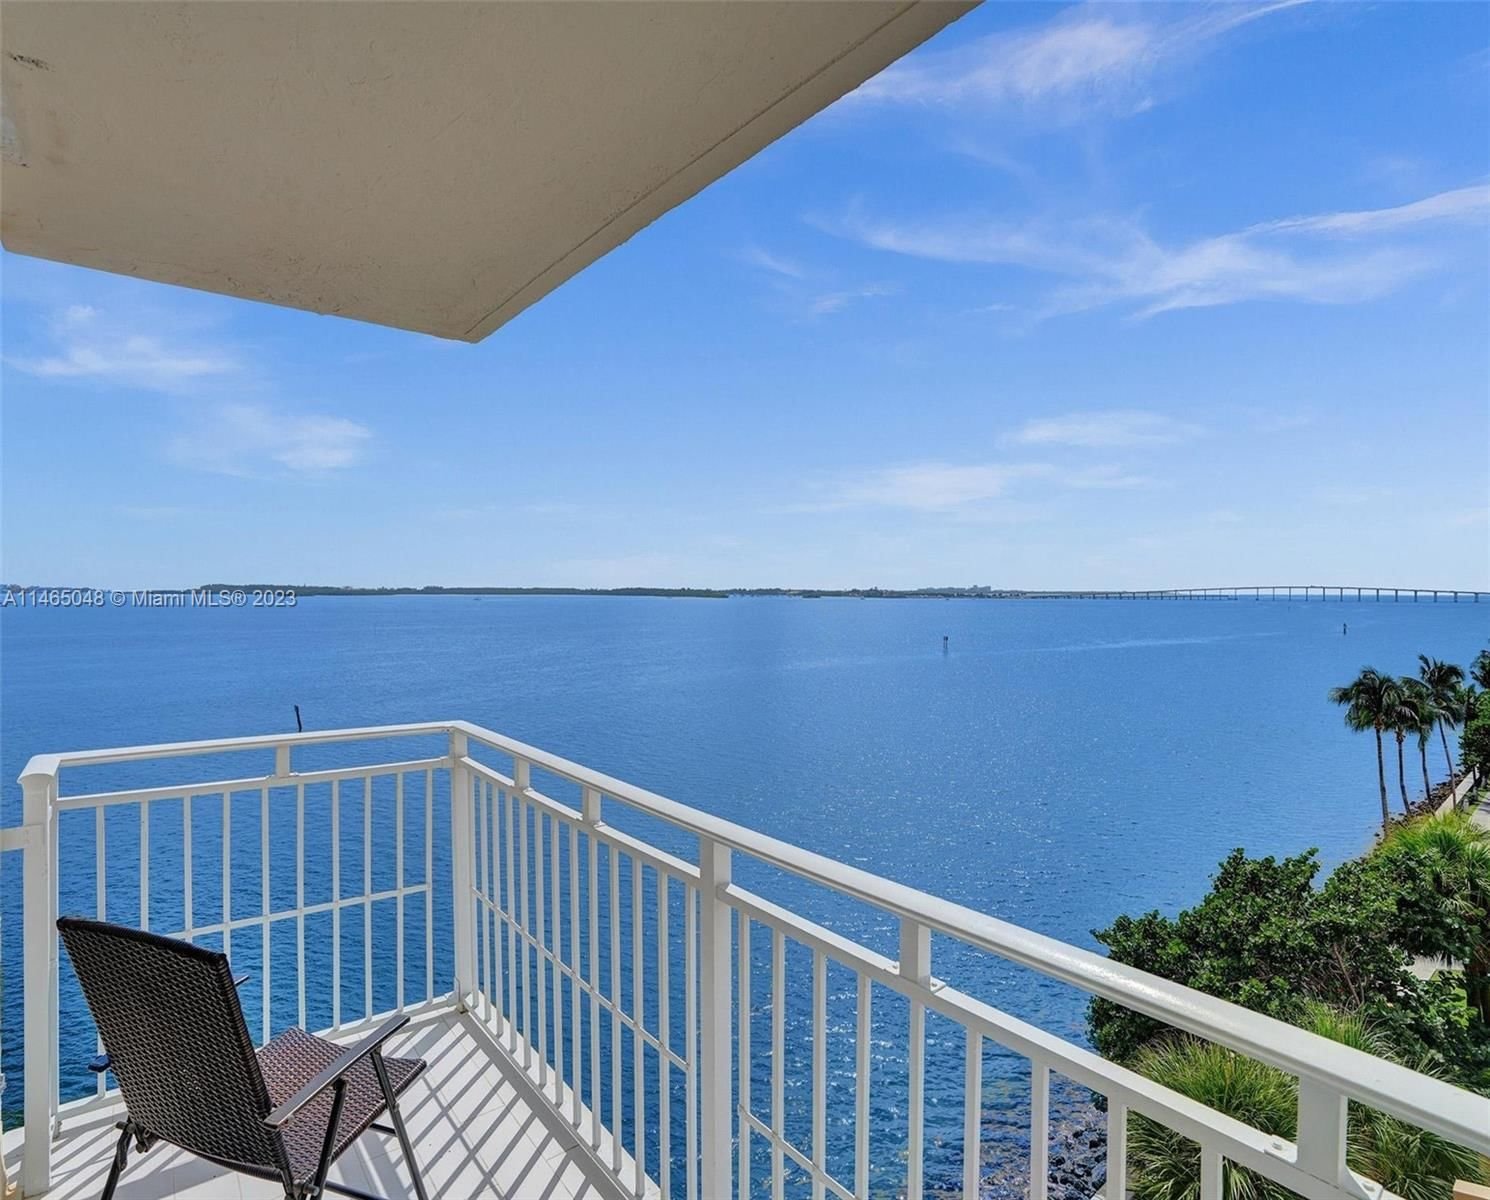 Real estate property located at 770 Claughton Island Dr #616, Miami-Dade County, ISOLA CONDO, Miami, FL